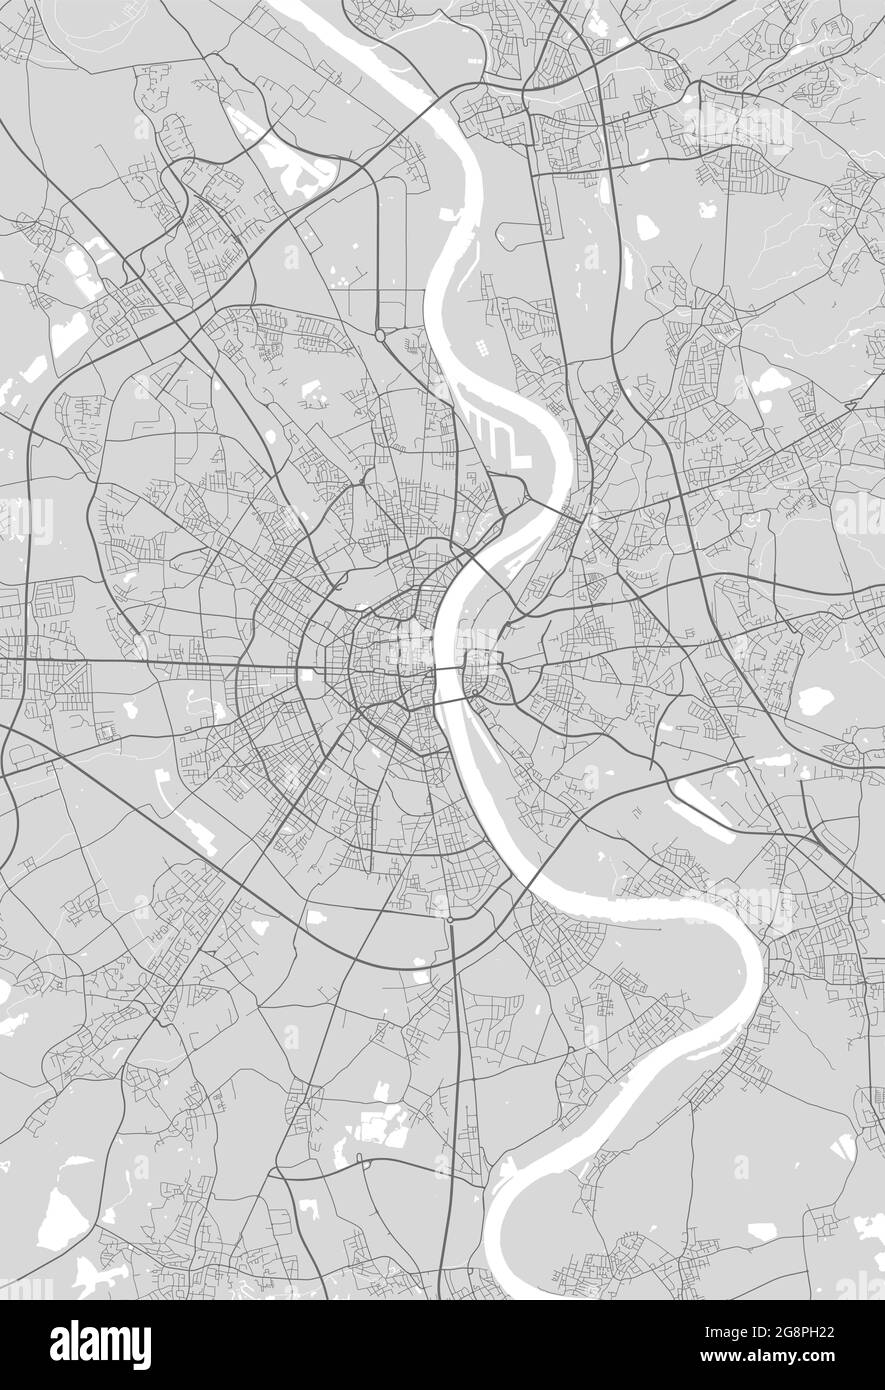 Mapa urbano de Colonia. Ilustración vectorial, póster artístico en escala de grises del mapa de Colonia. Imagen del mapa de calles con carreteras, vista del área metropolitana de la ciudad. Ilustración del Vector